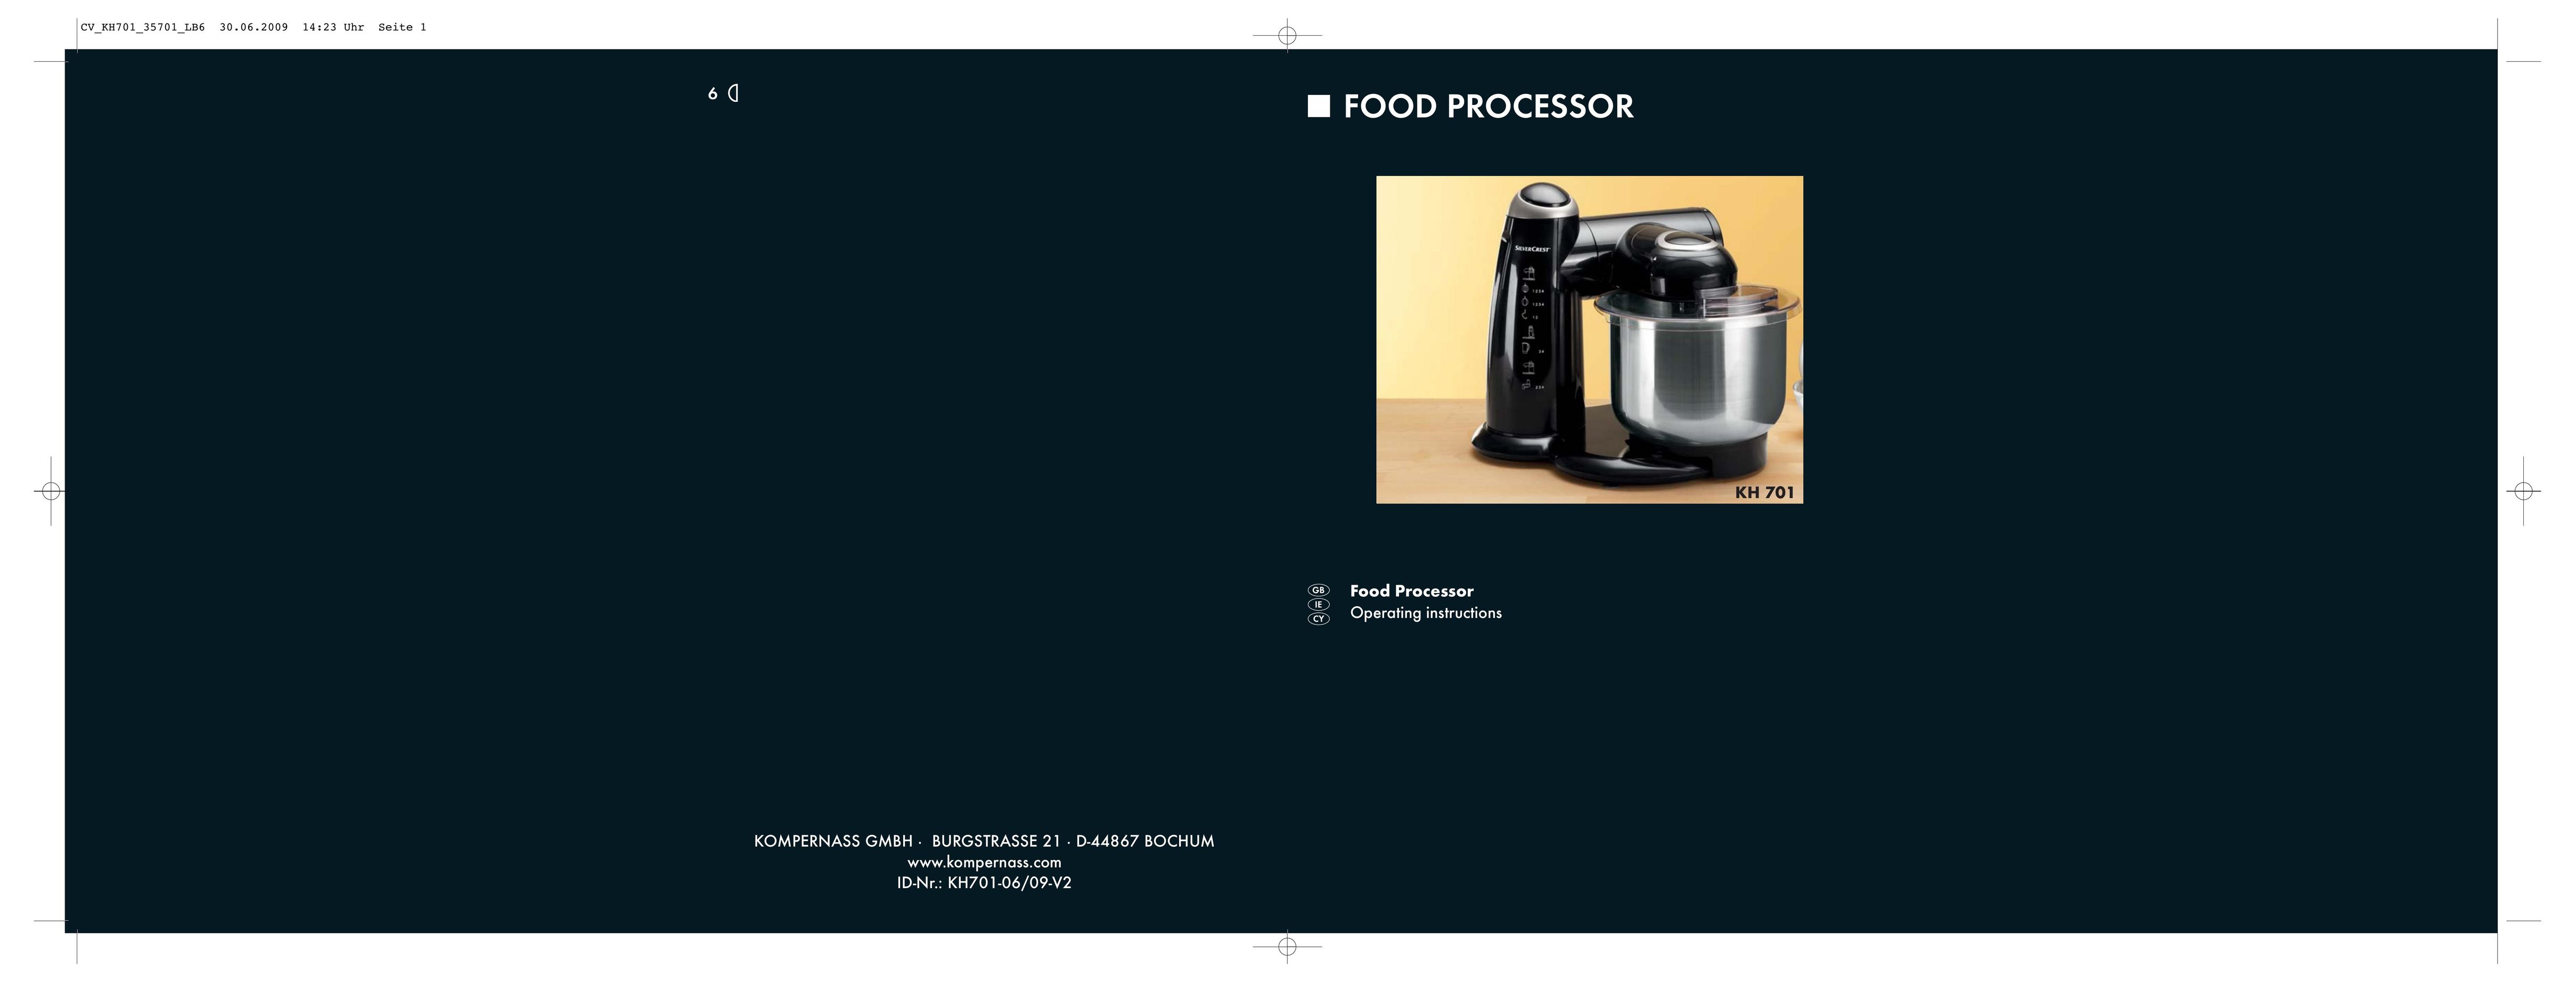 Kompernass KH 701 Food Processor User Manual